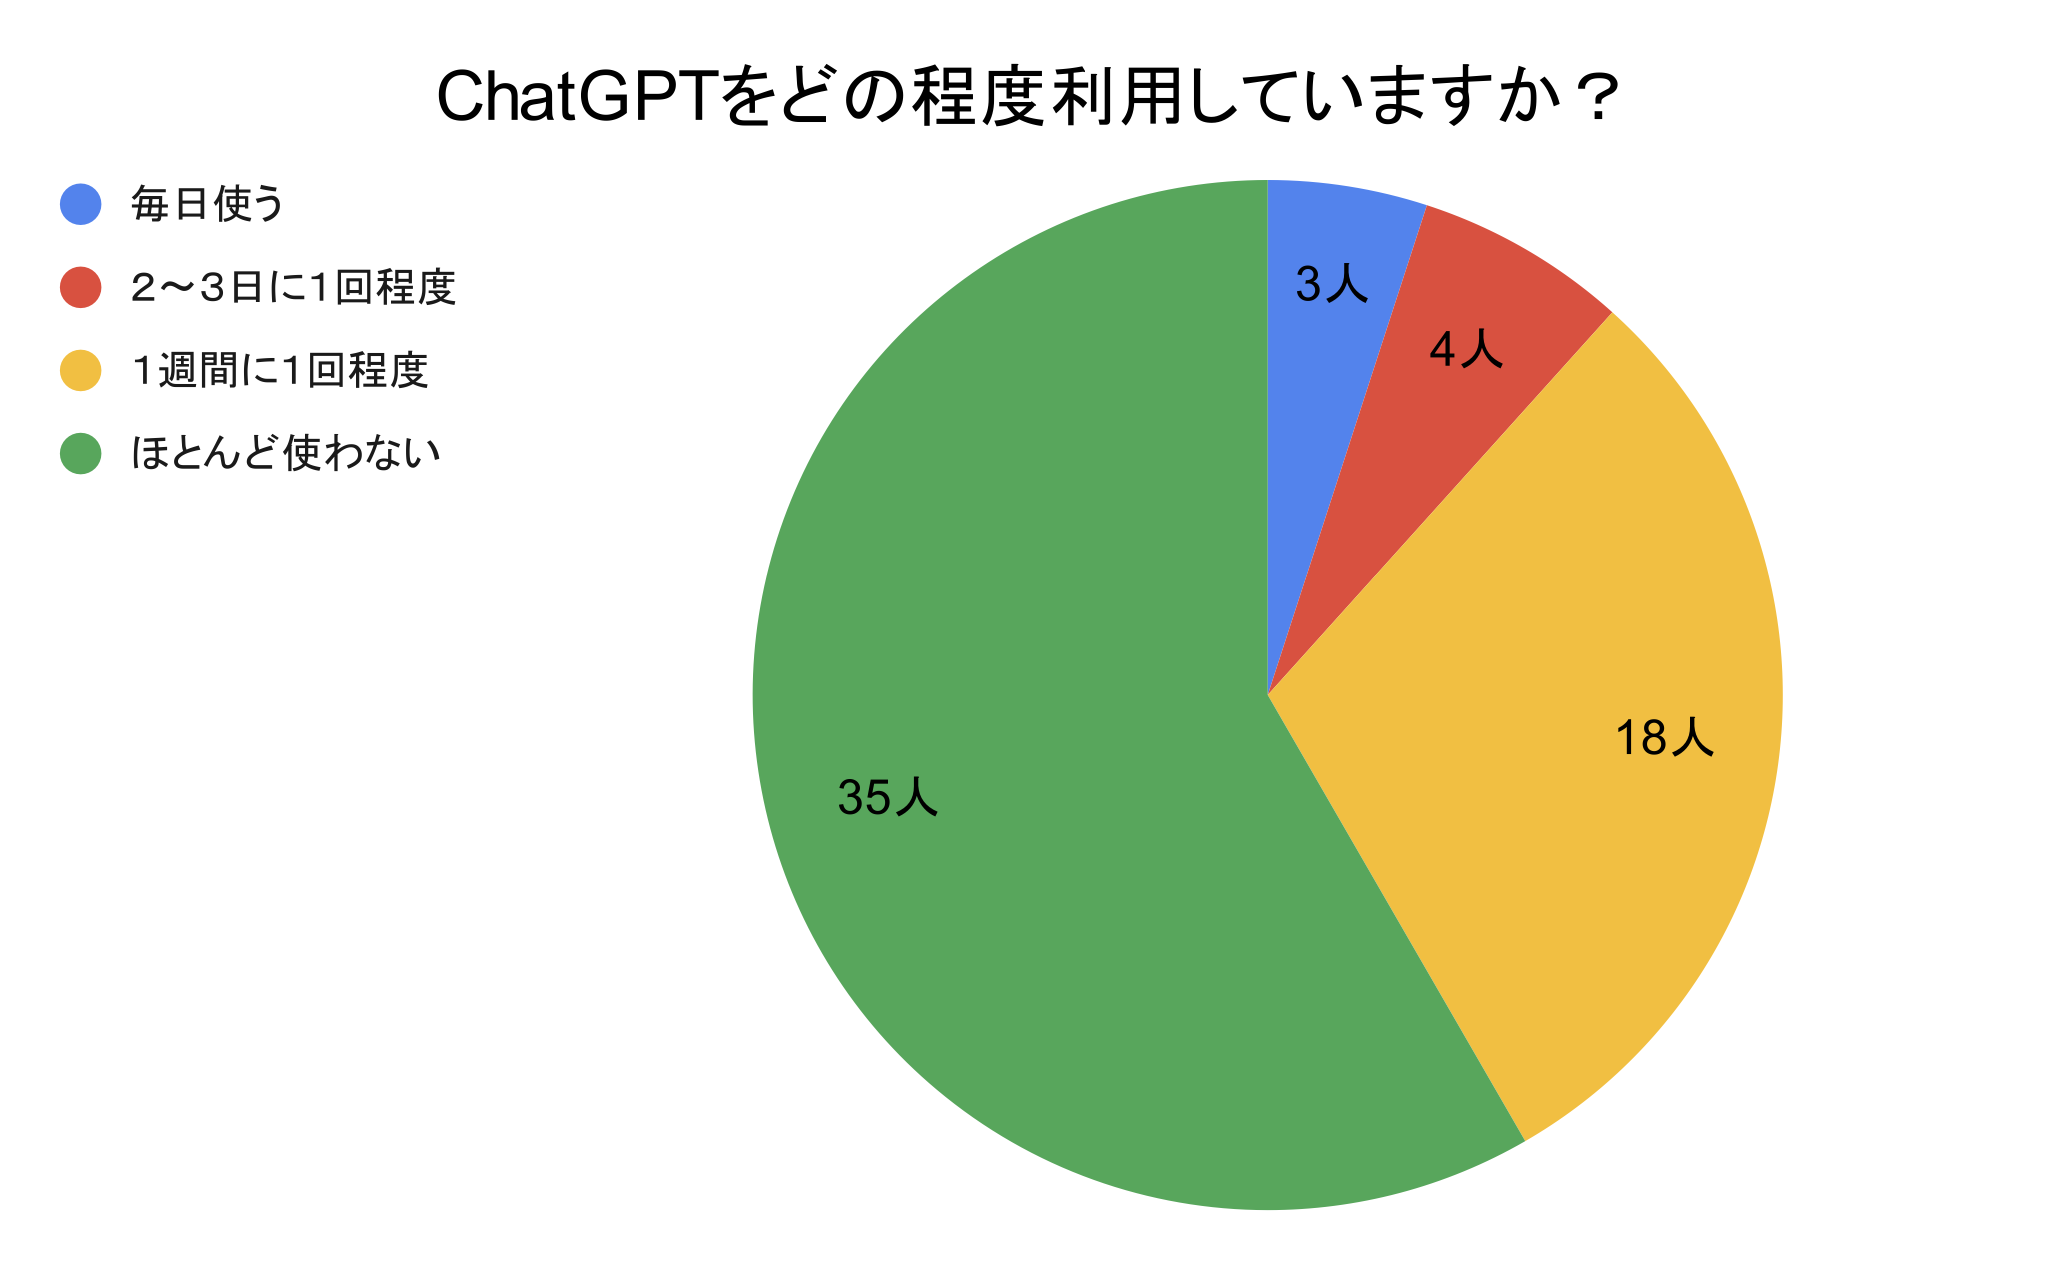 （図）ChatGPTをどの程度利用していますか？